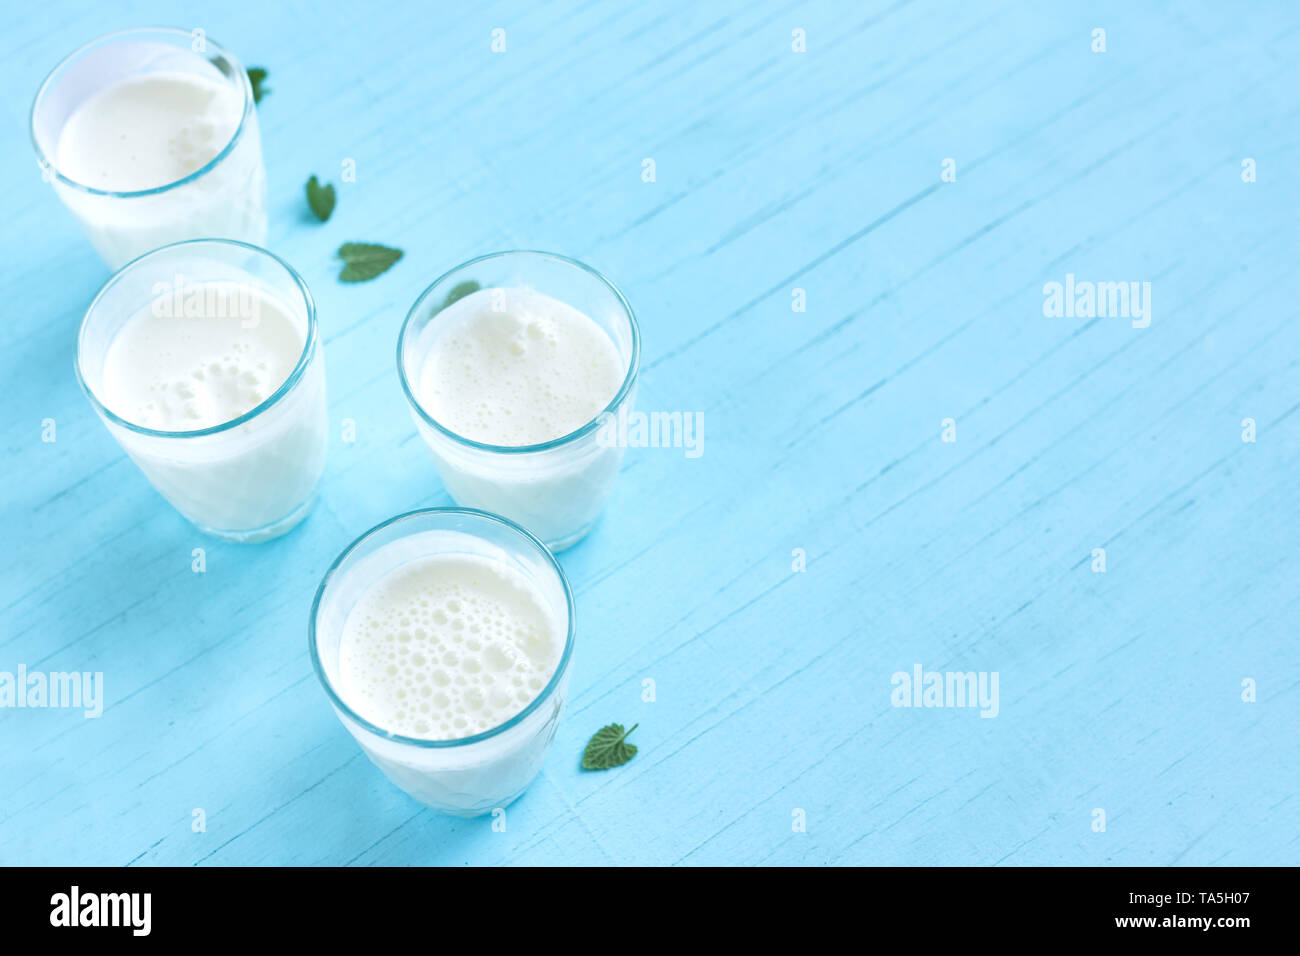 Ayran, yogur casero bebida (kéfir, lassi) con pepinos - verano saludable refrescante bebida fría en azul, espacio de copia. Foto de stock